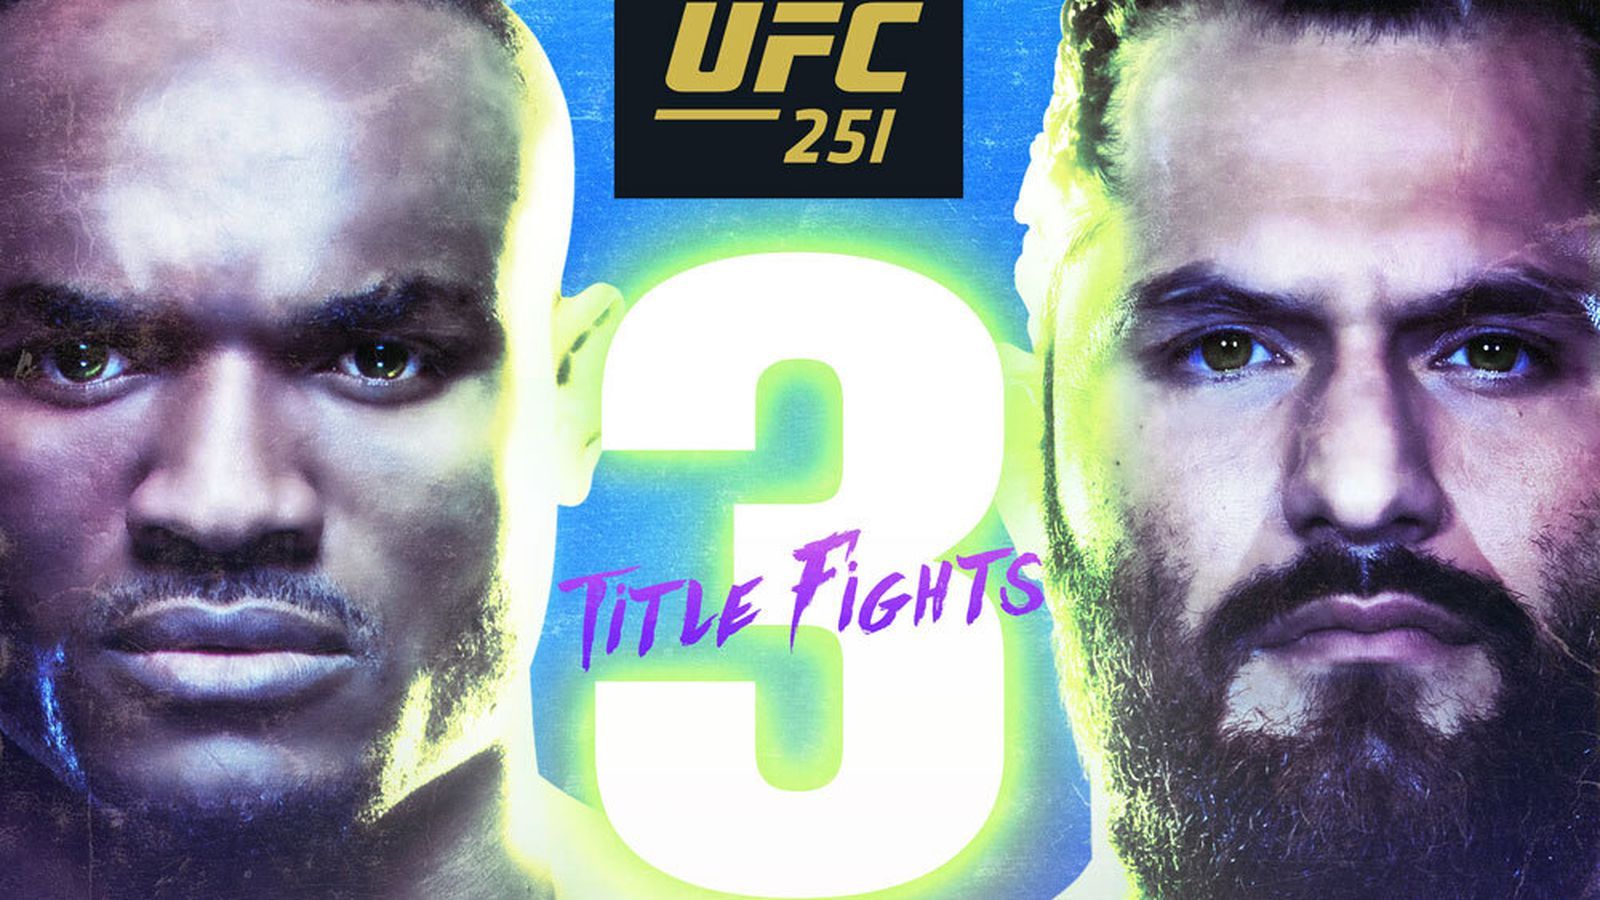 New UFC 251 poster drops for 'Usman vs Masvidal'